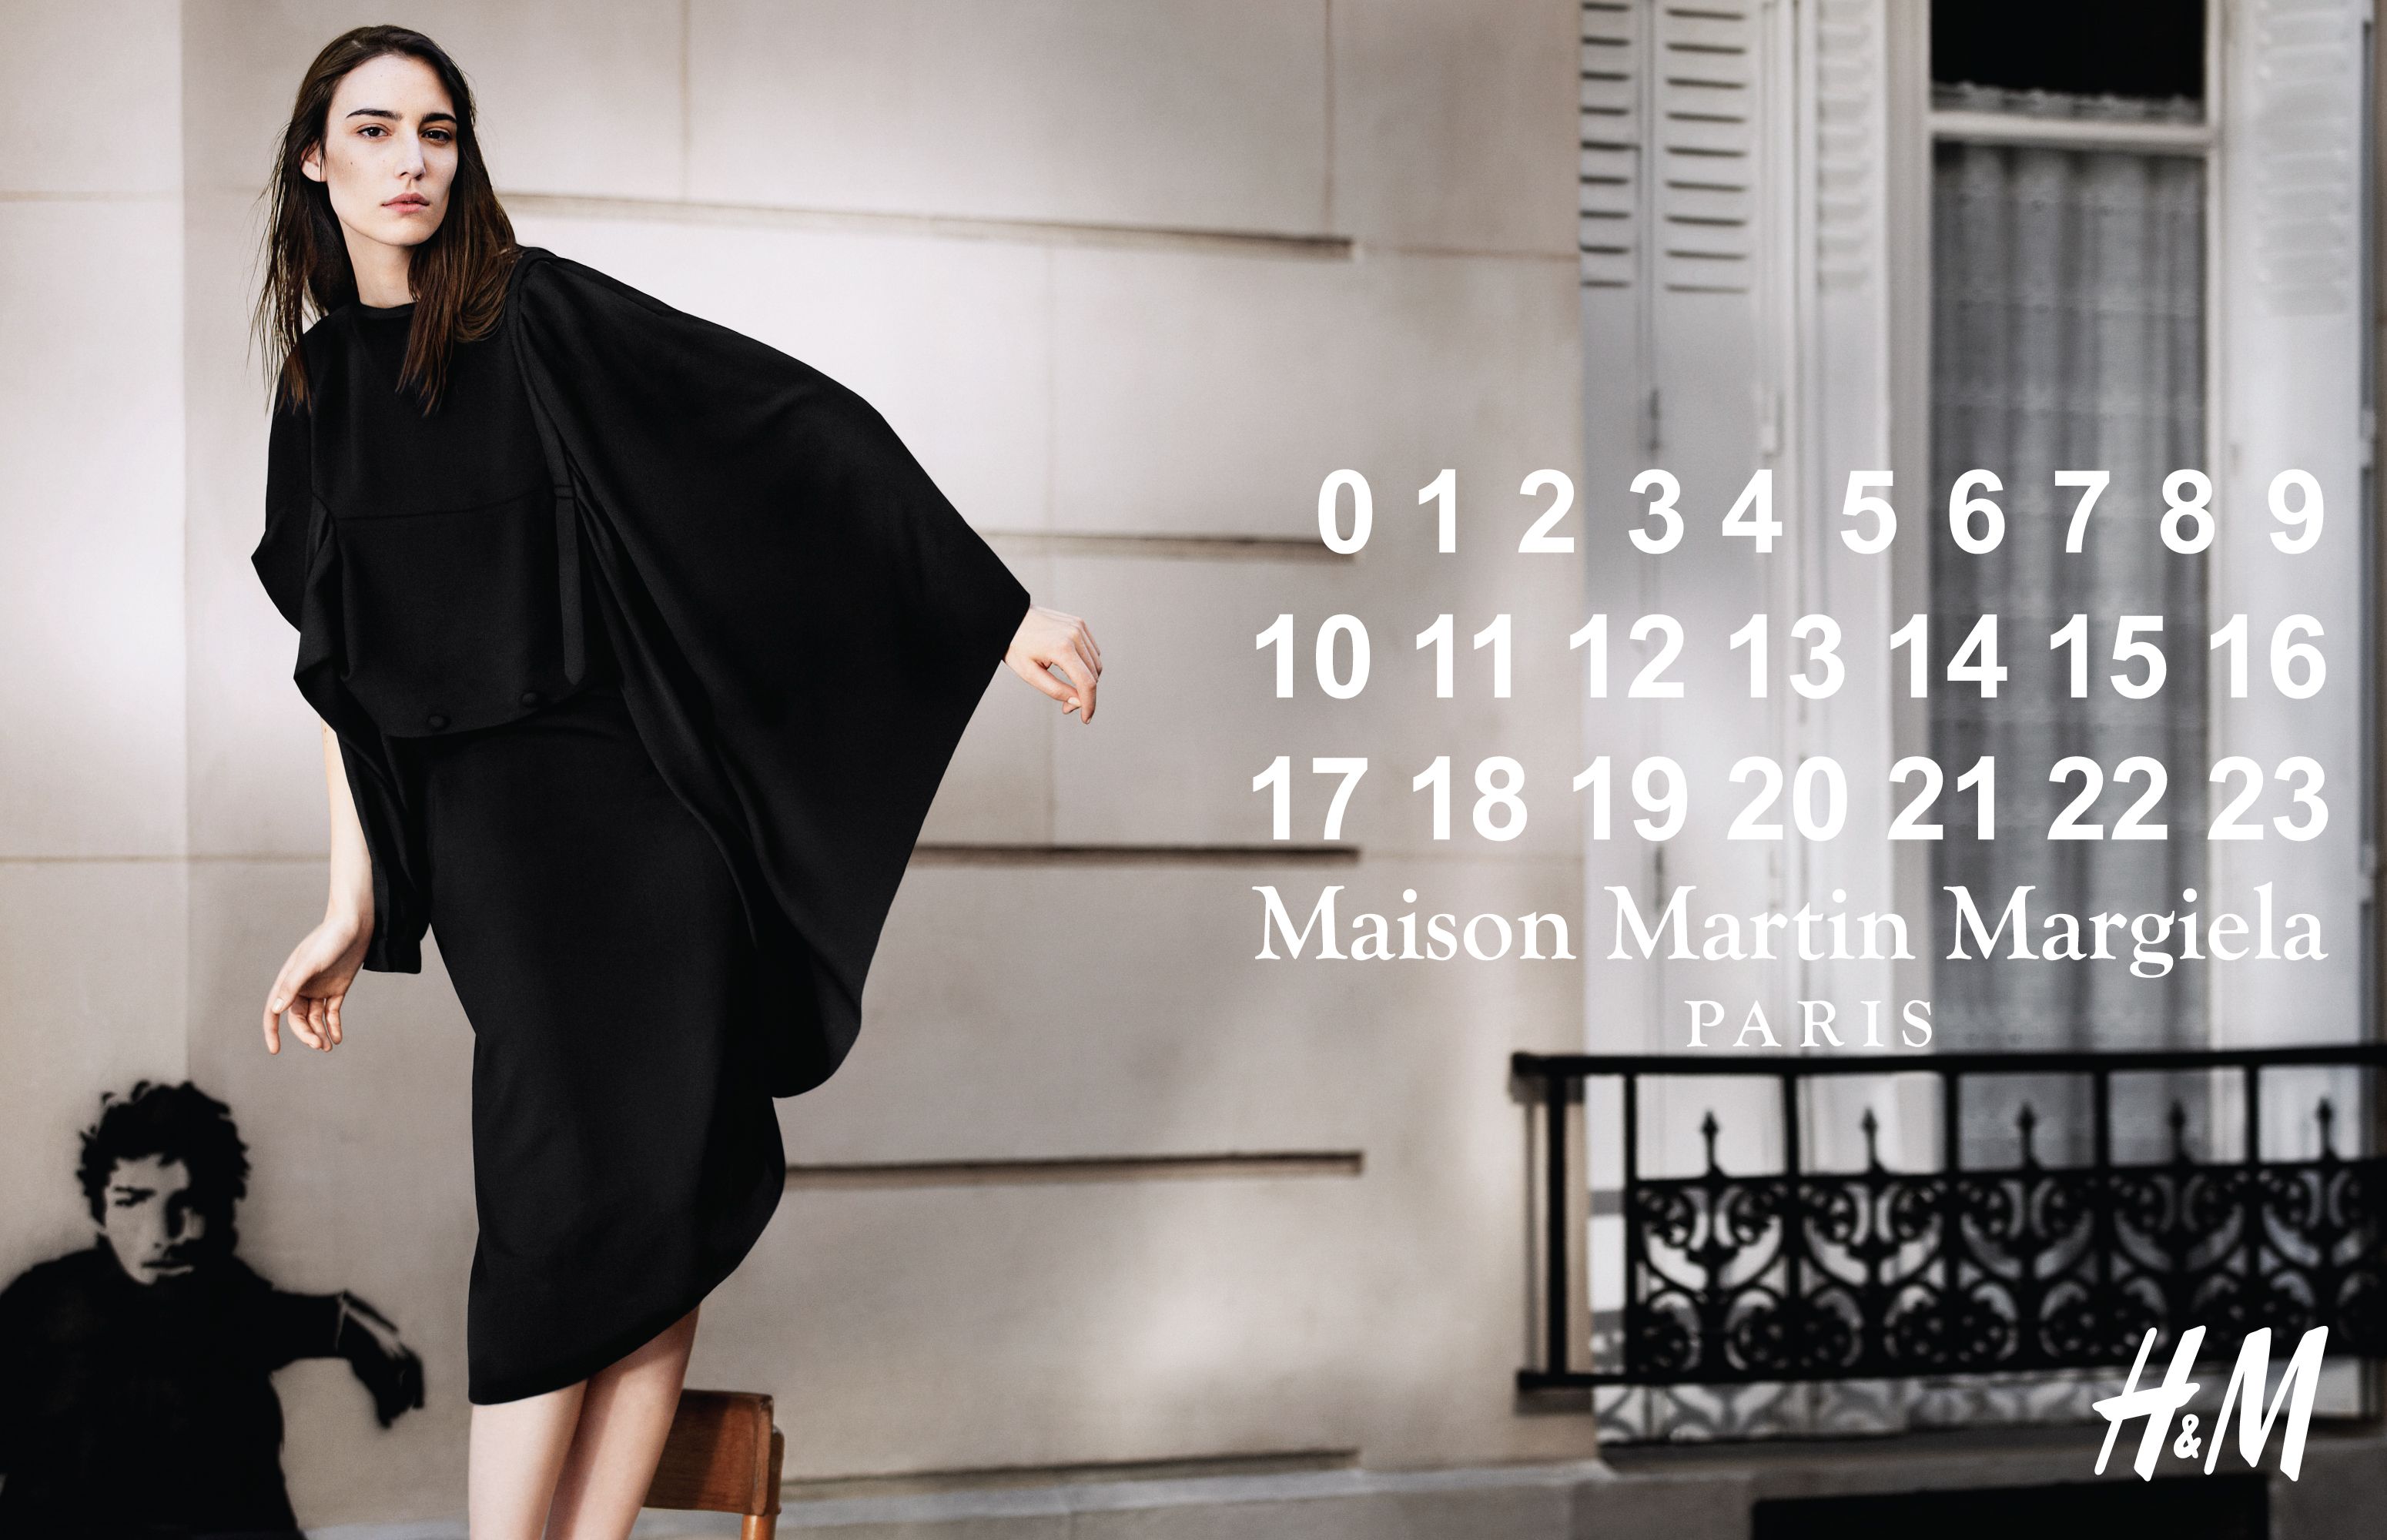 H&M Maison Martin Margiela - jessica craig martin styled by Sabina Schreder